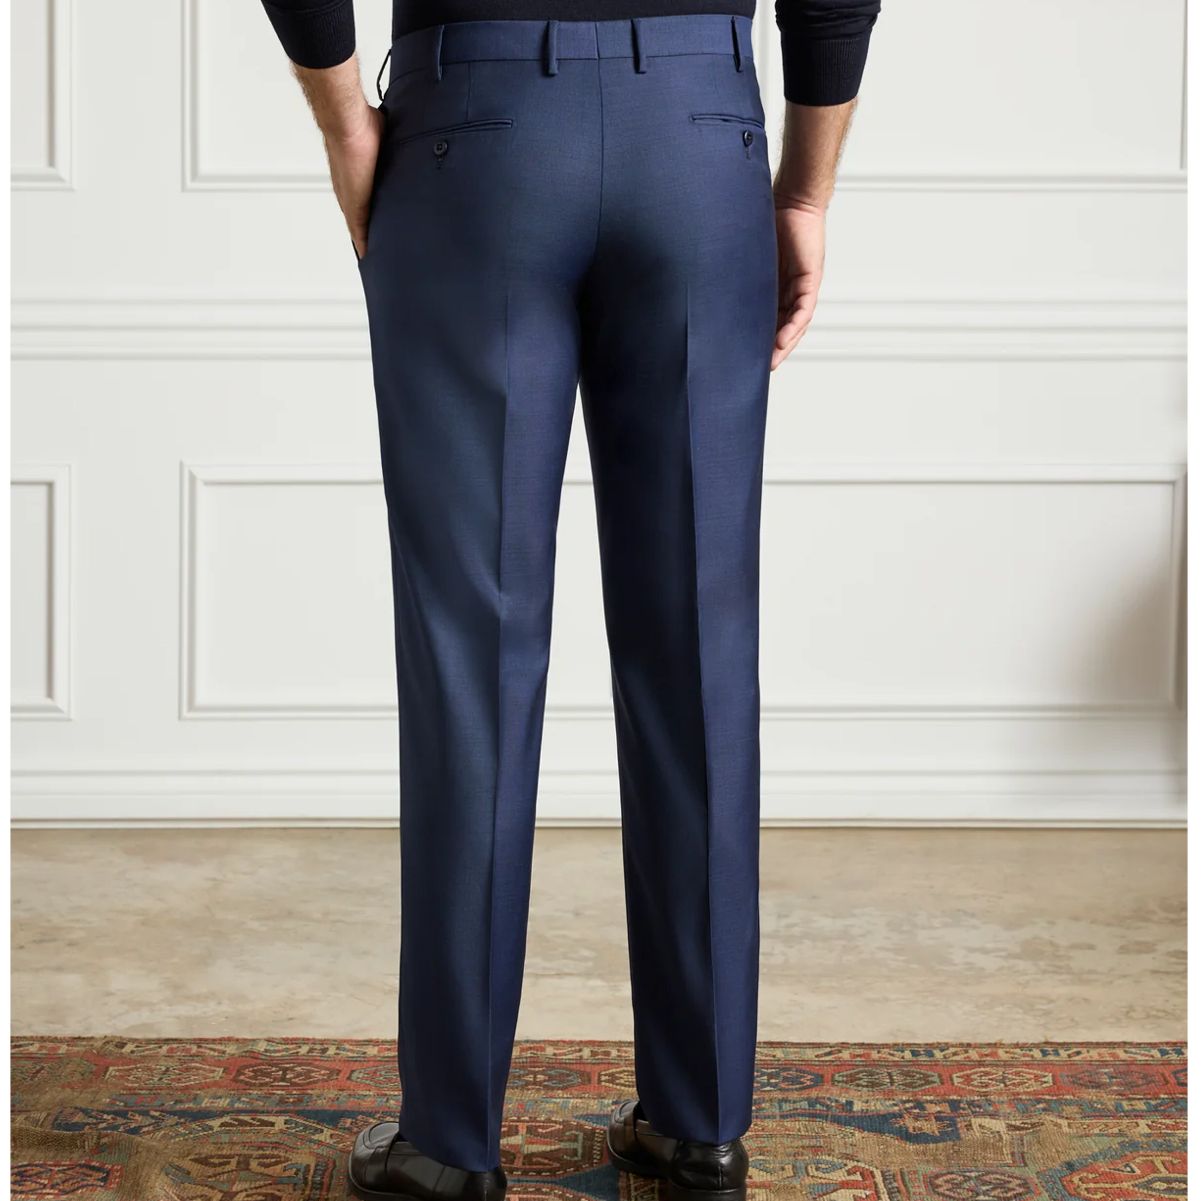 Parker Flat Front Sharkskin Wool Trouser in Navy (Modern Straight Fit) by Zanella